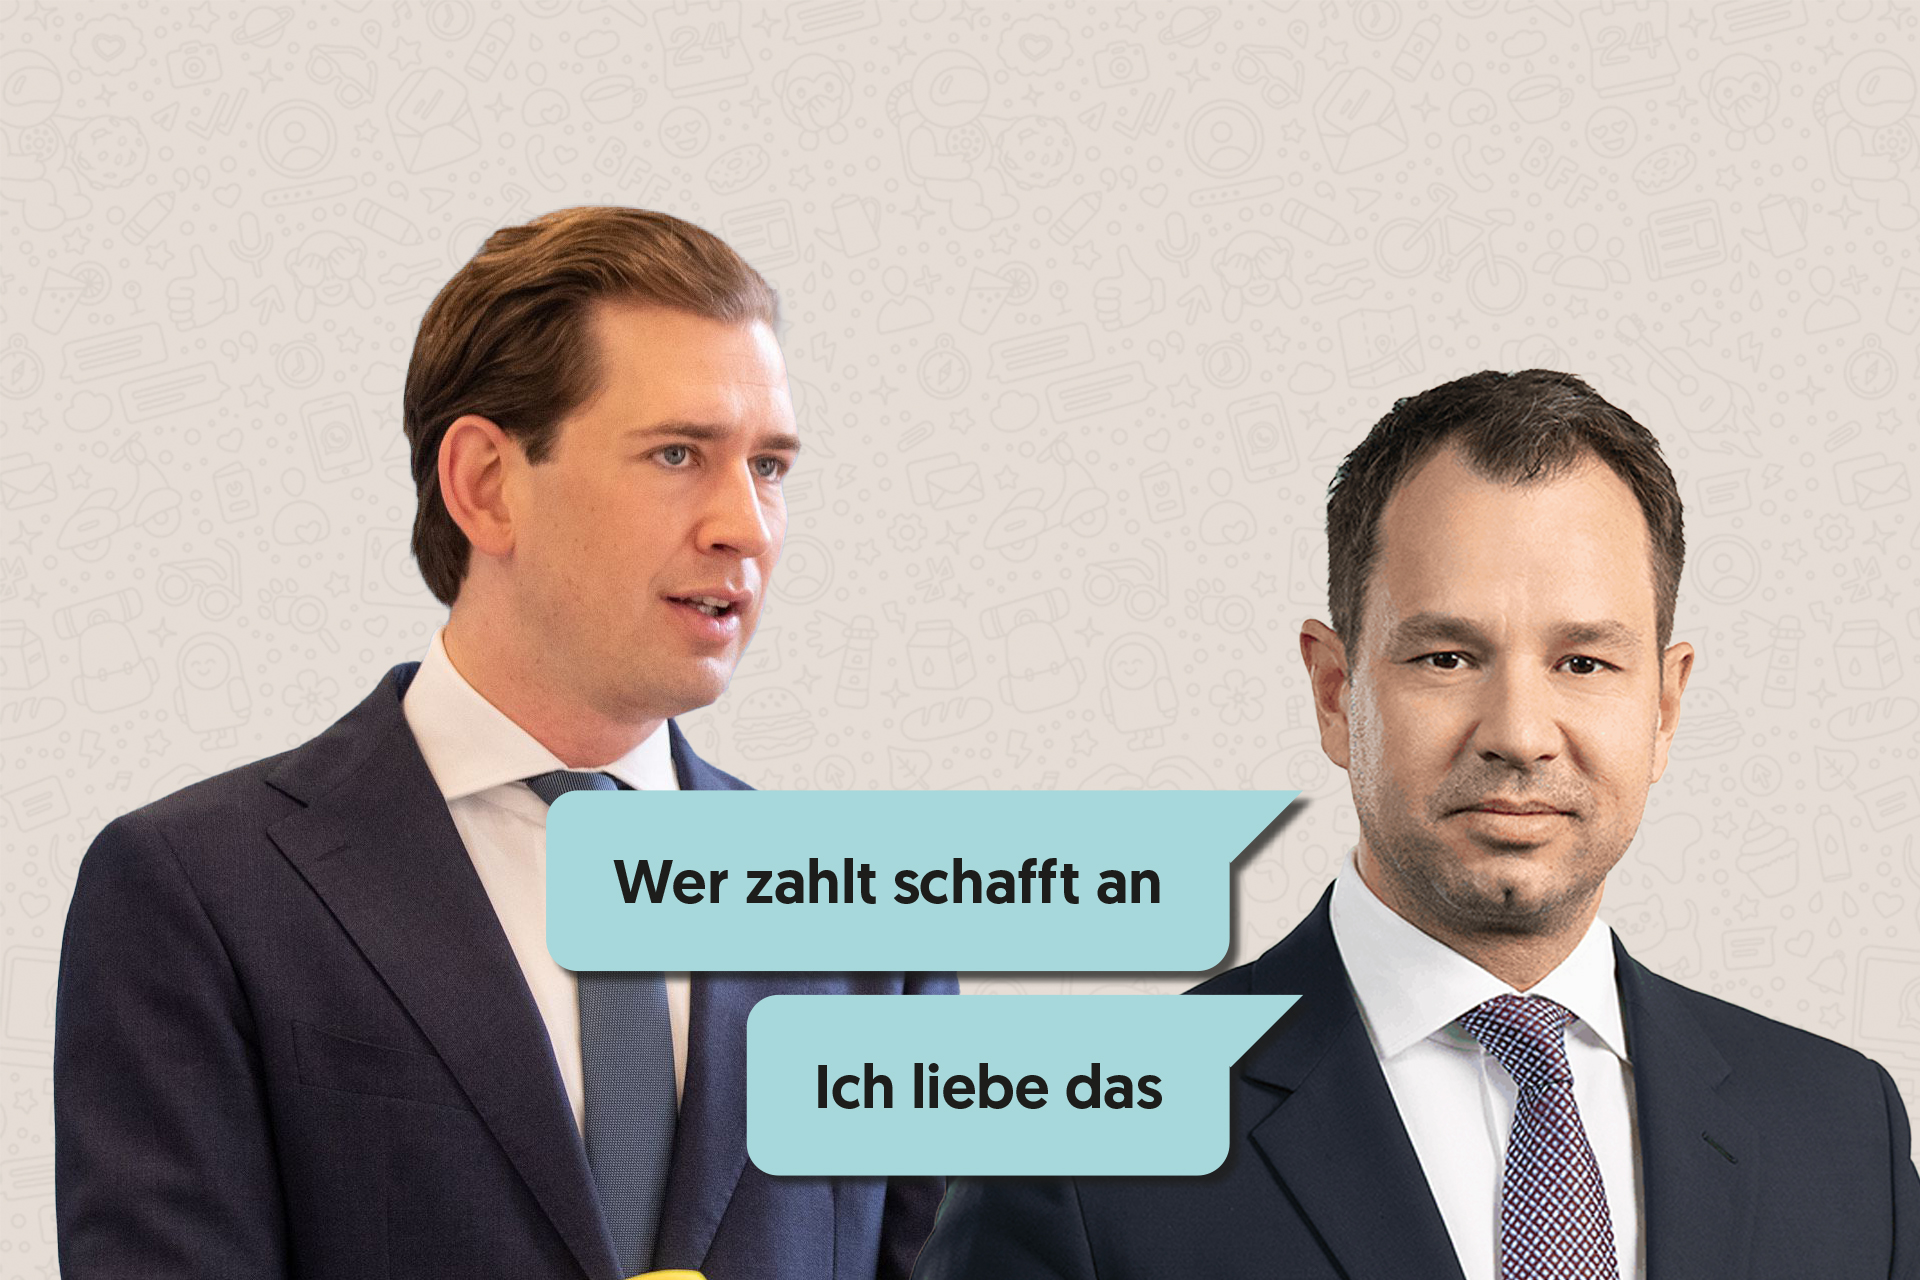 ÖVP-Chat-Protokolle: Kurz soll fast 2 Mio. Euro Steuergelder für Machtübernahme missbraucht haben